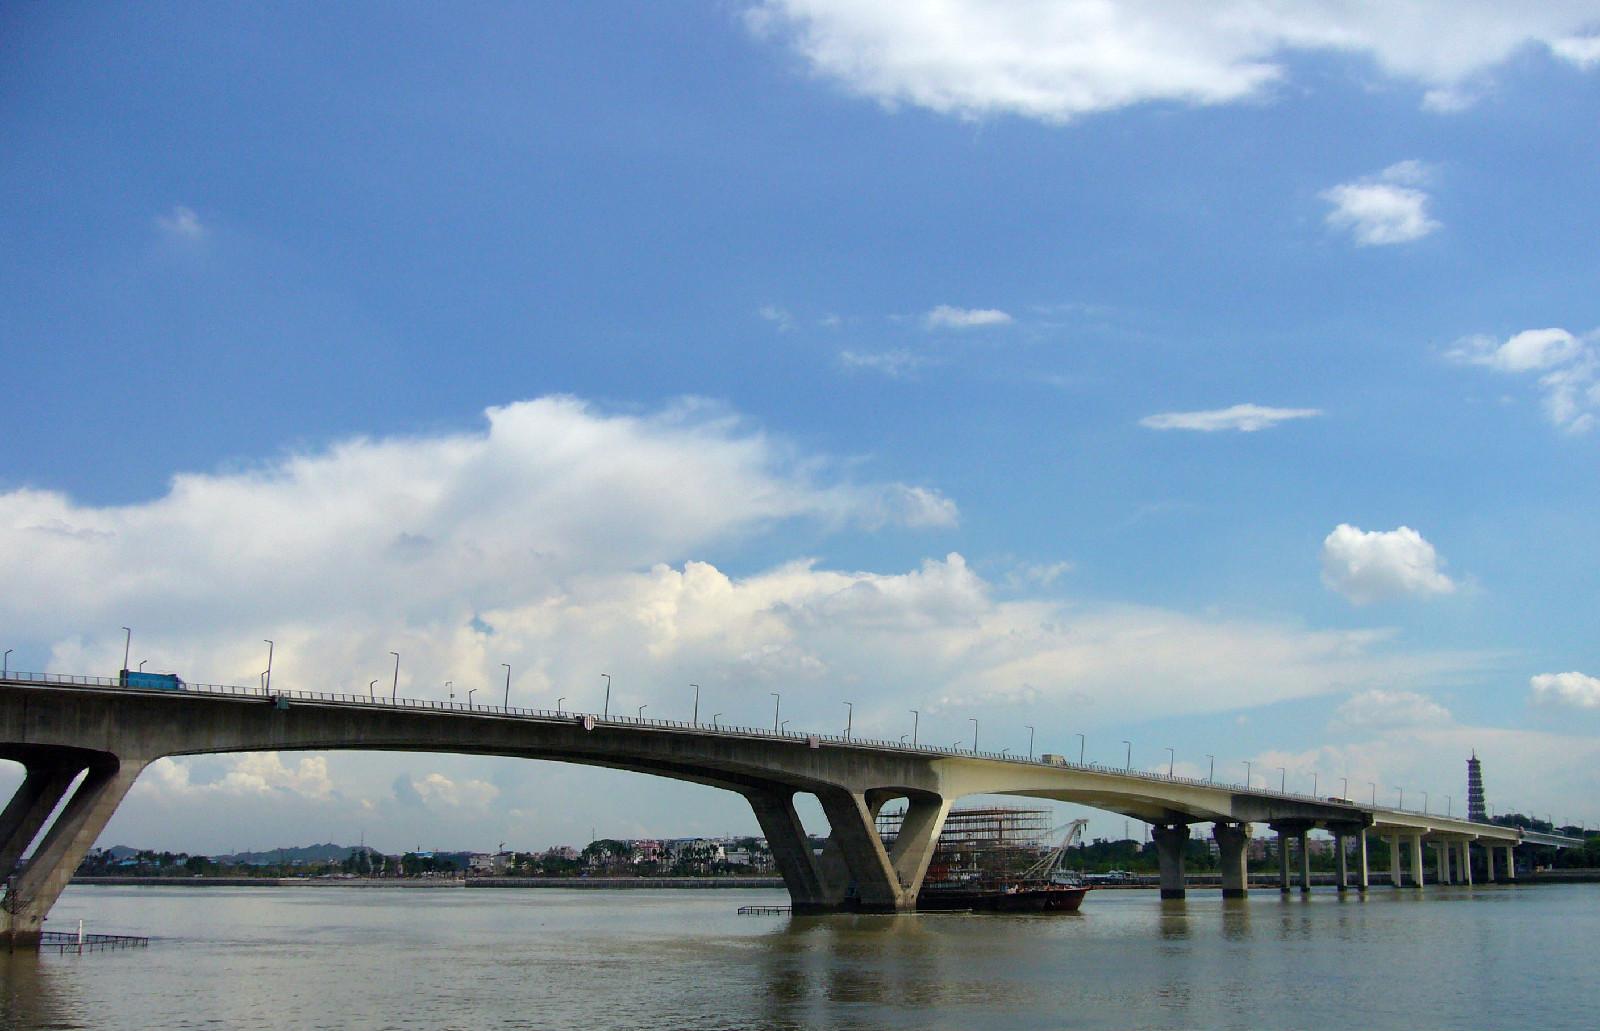 琶洲大桥是中国至天河区的一座跨越珠江桥梁,属于广州国际会议展览